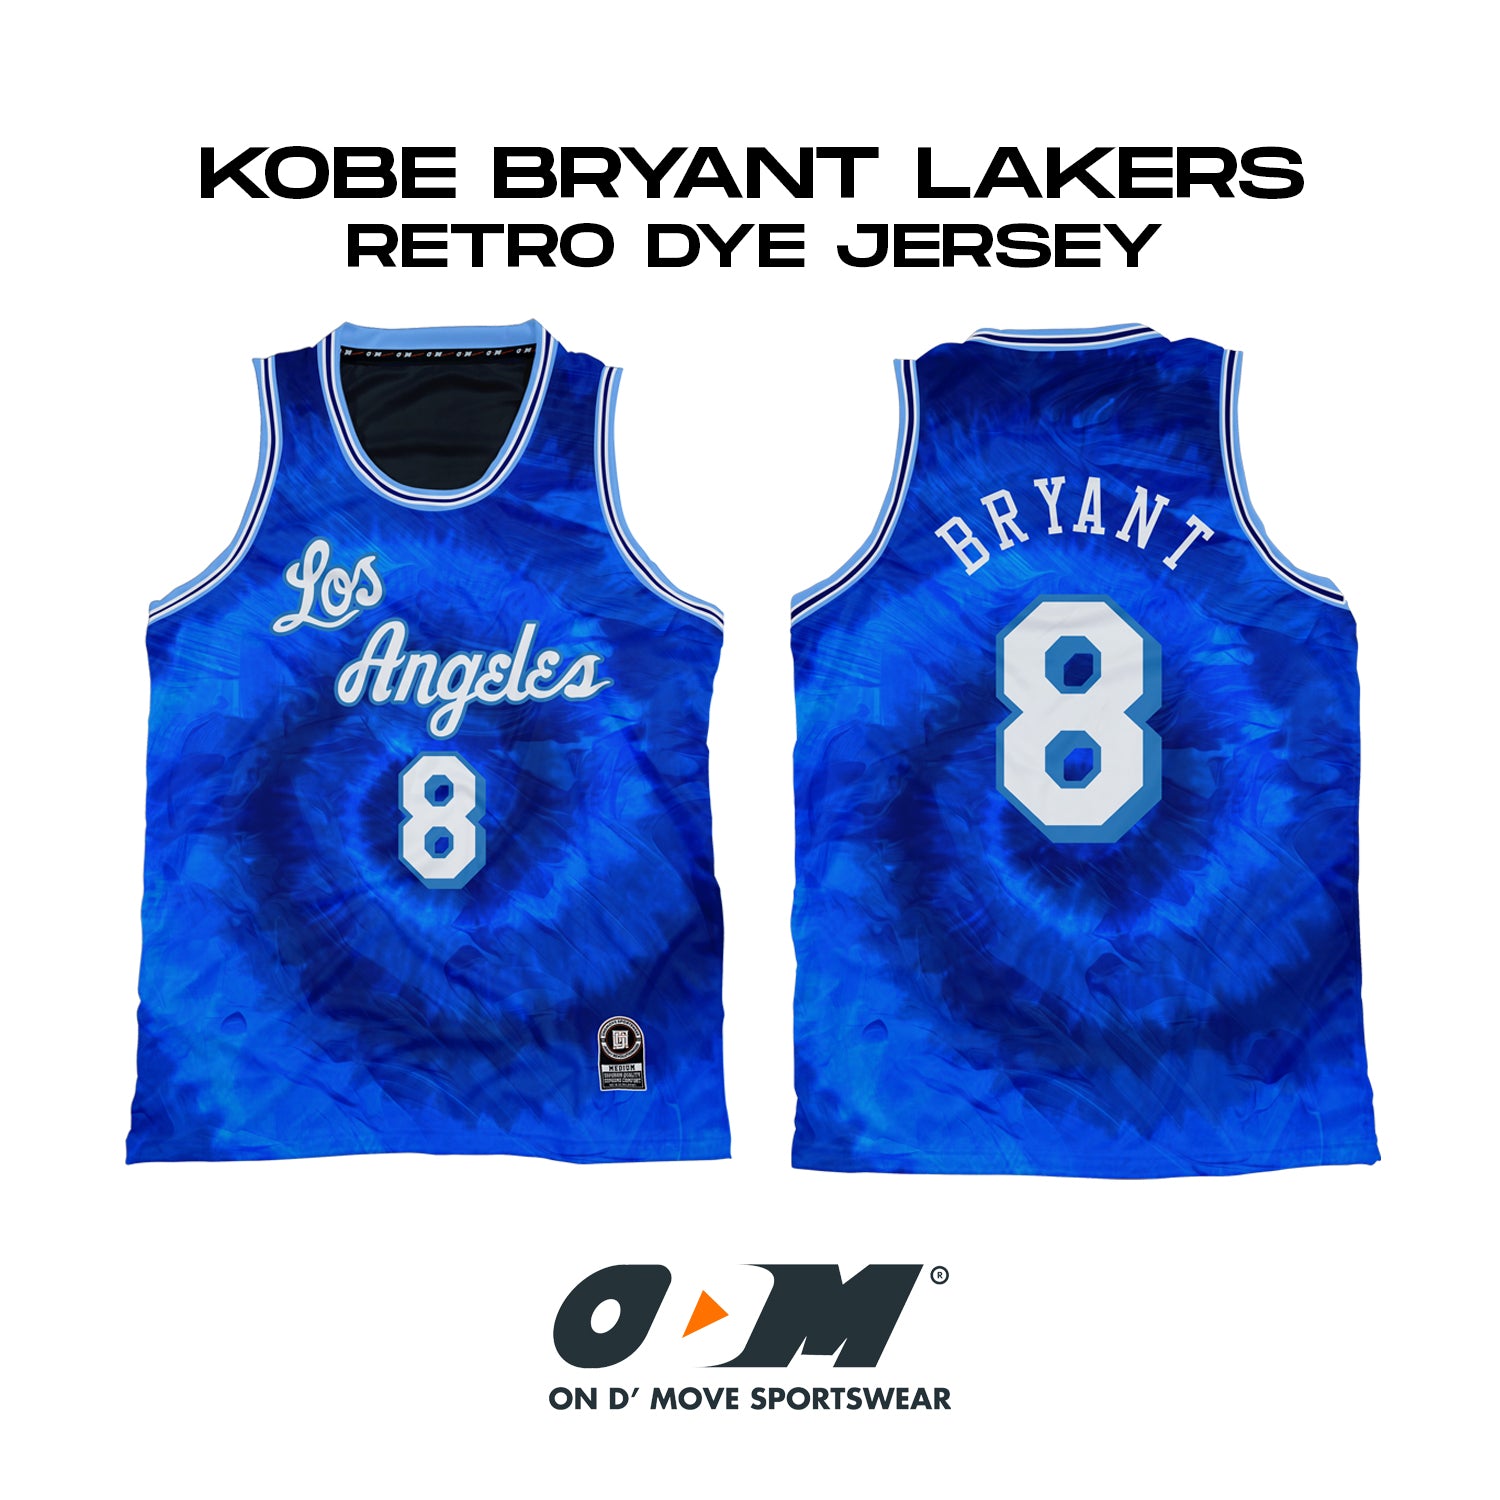 Kobe Bryant LA Lakers Retro Dye Jersey